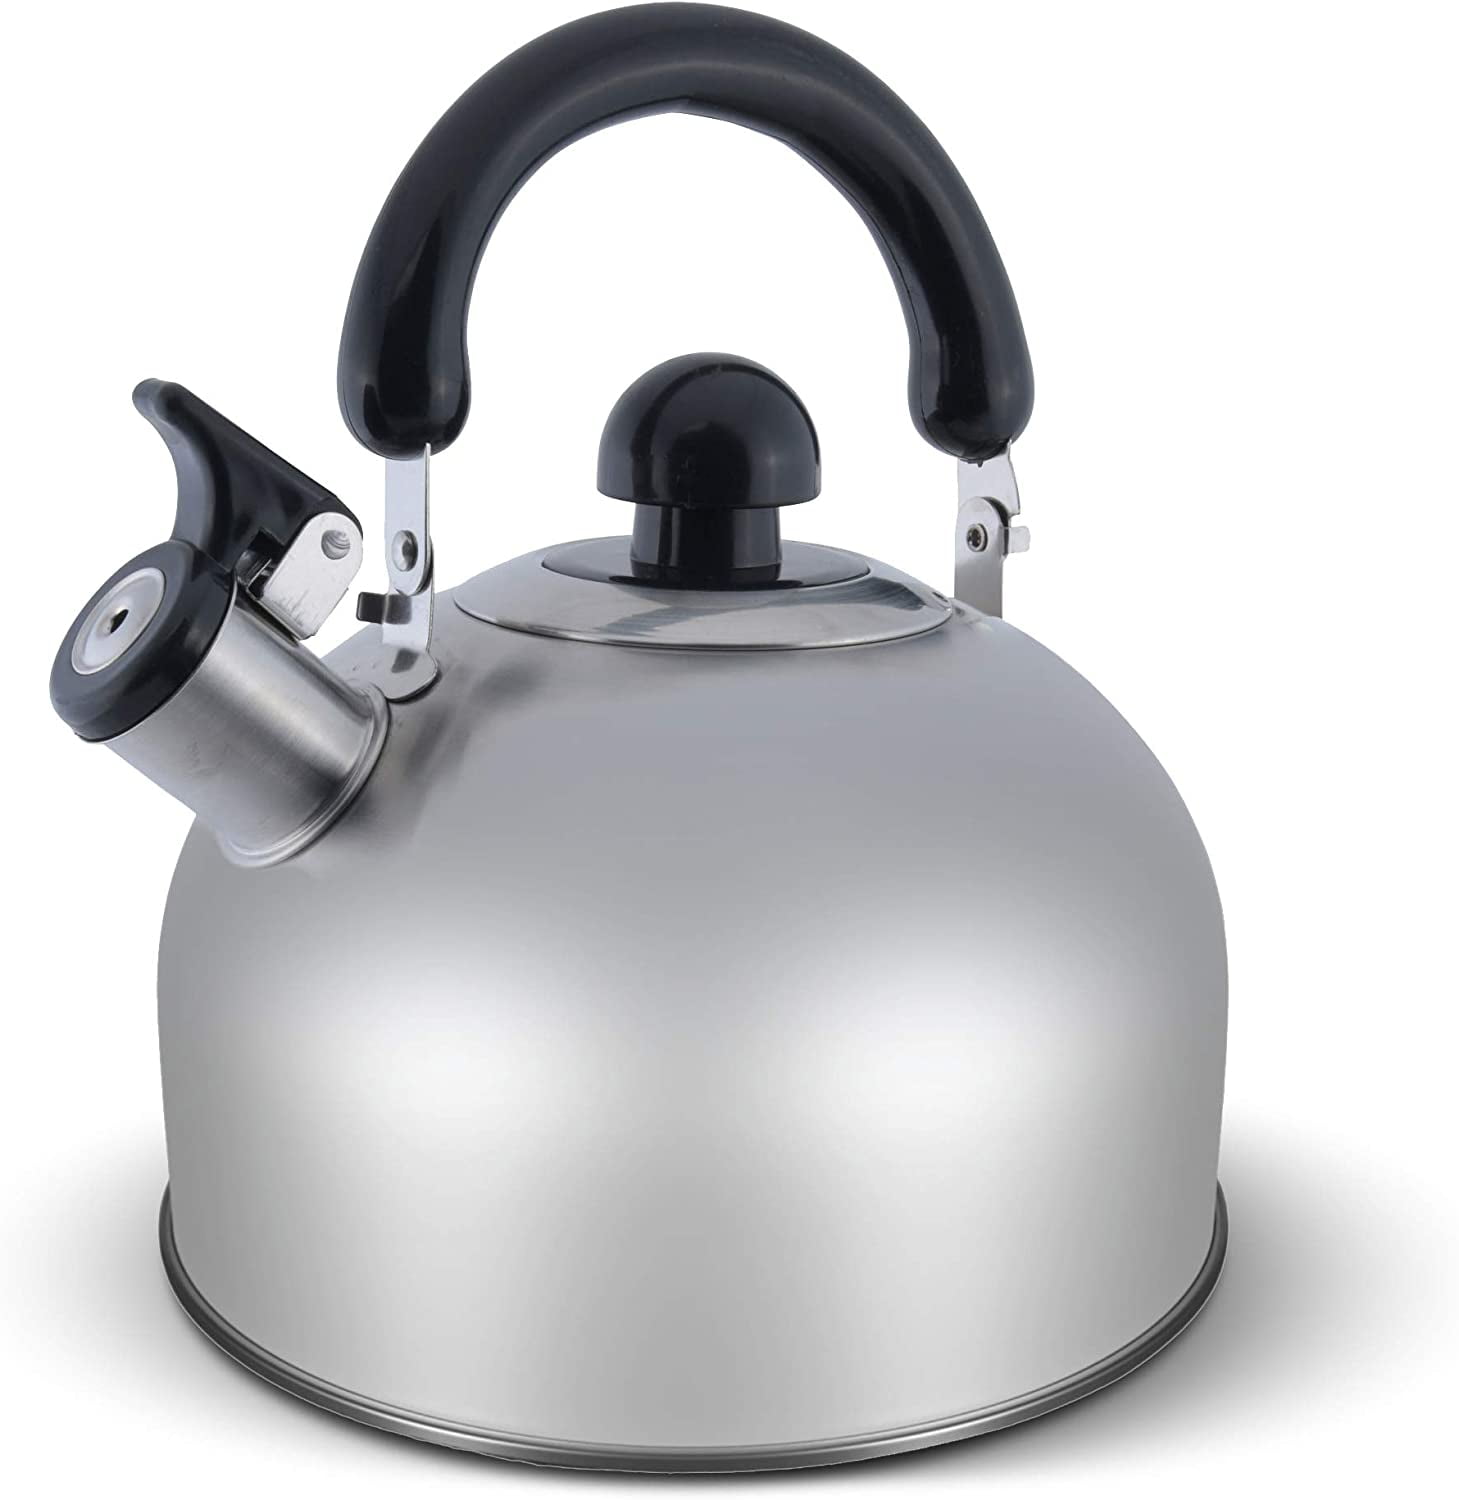 Mainstays 2.5-Liter Whistling Tea Kettle, Stainless Steel